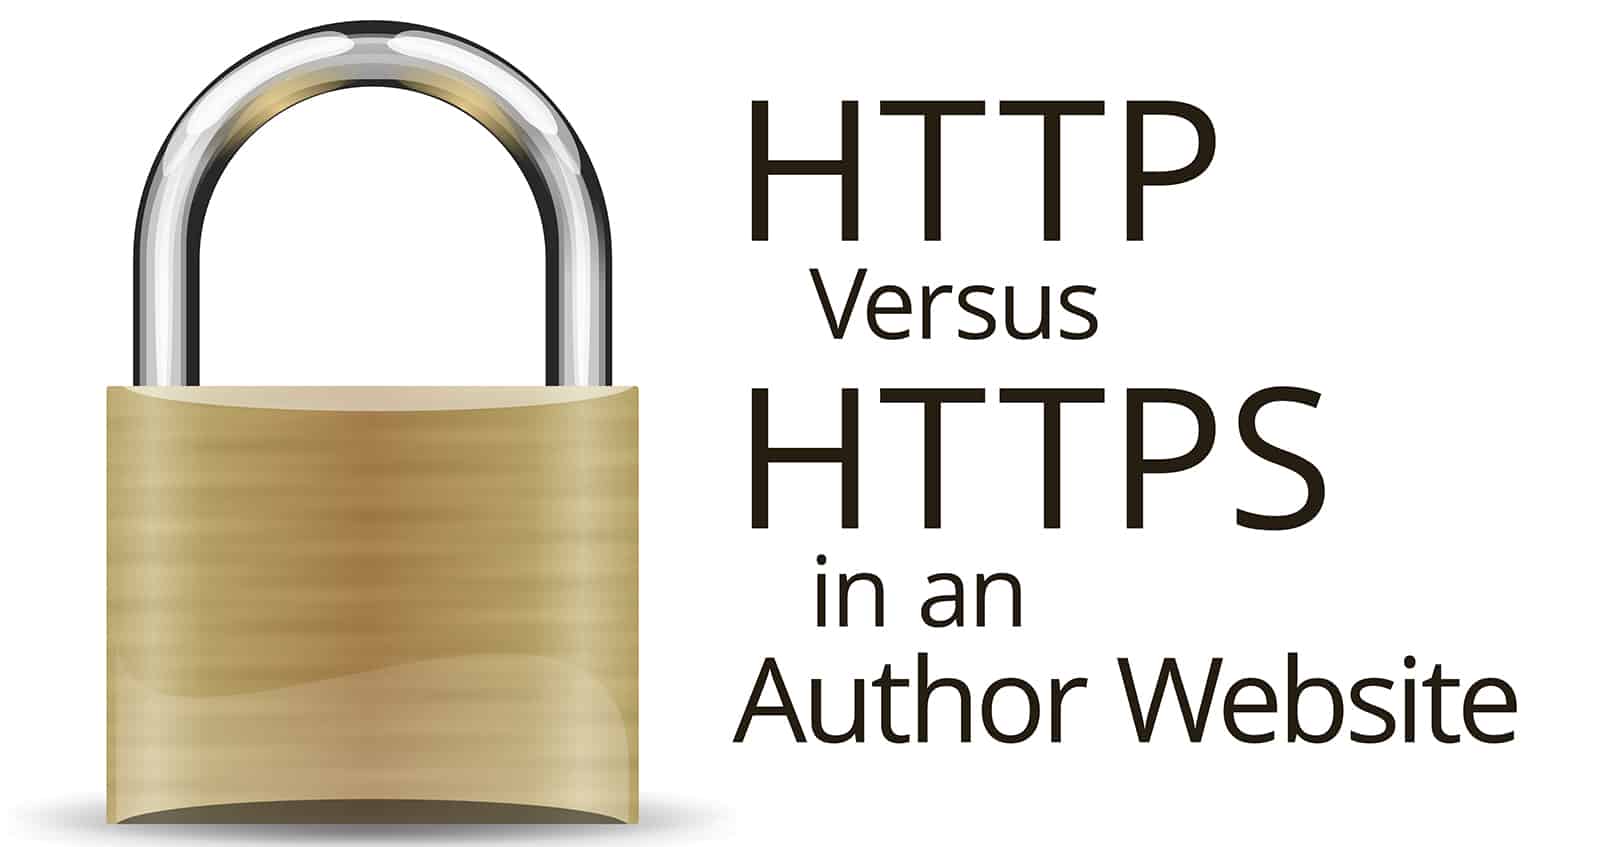 http versus https in an author website